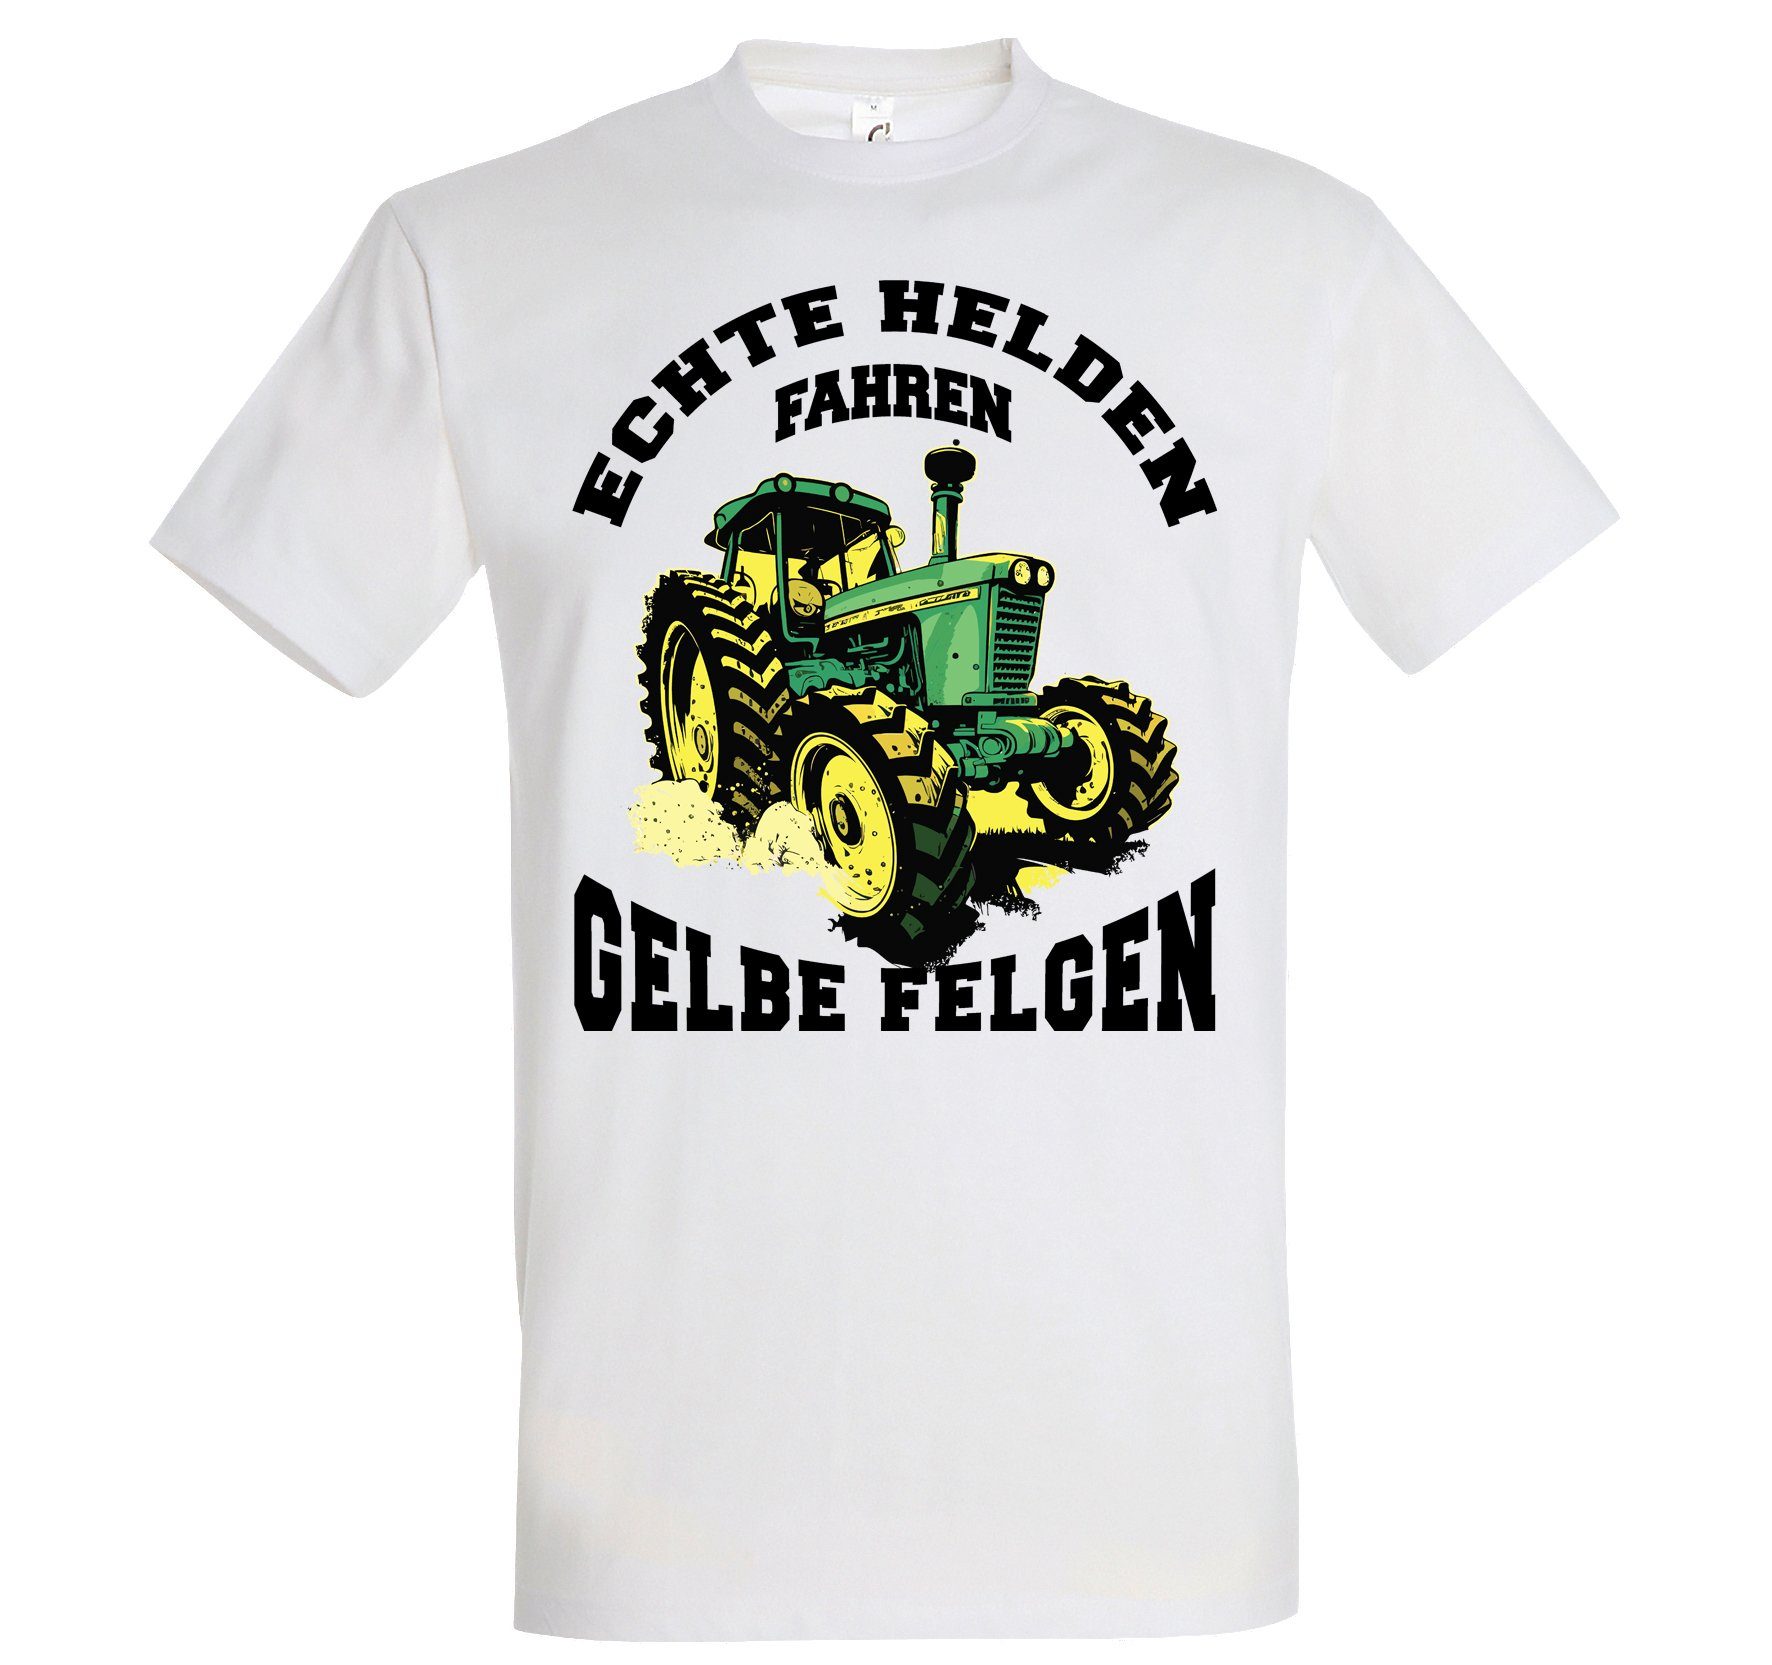 Youth Designz Print-Shirt "Echte Helden fahren gelbe Felgen" Herren T-Shirt mit lustigem Spruch Weiss